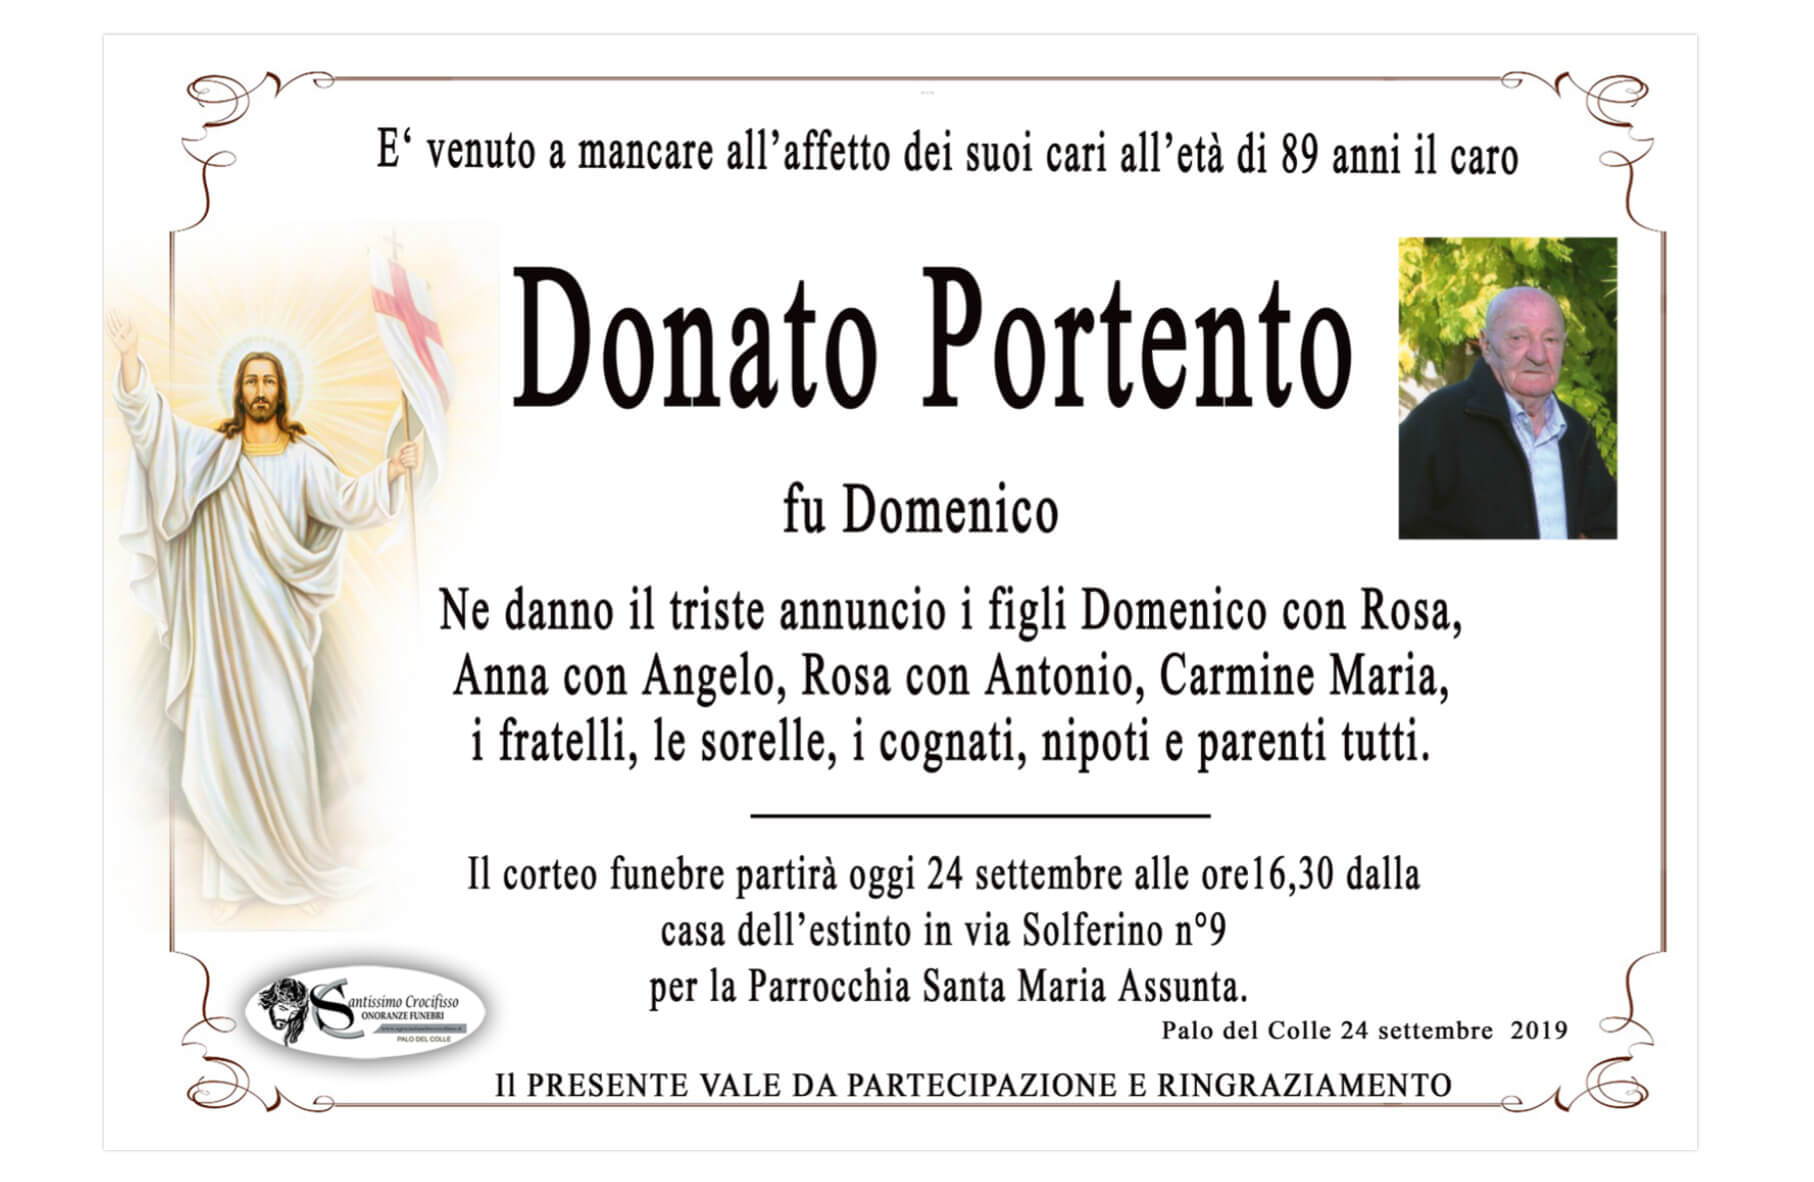 Donato Portento